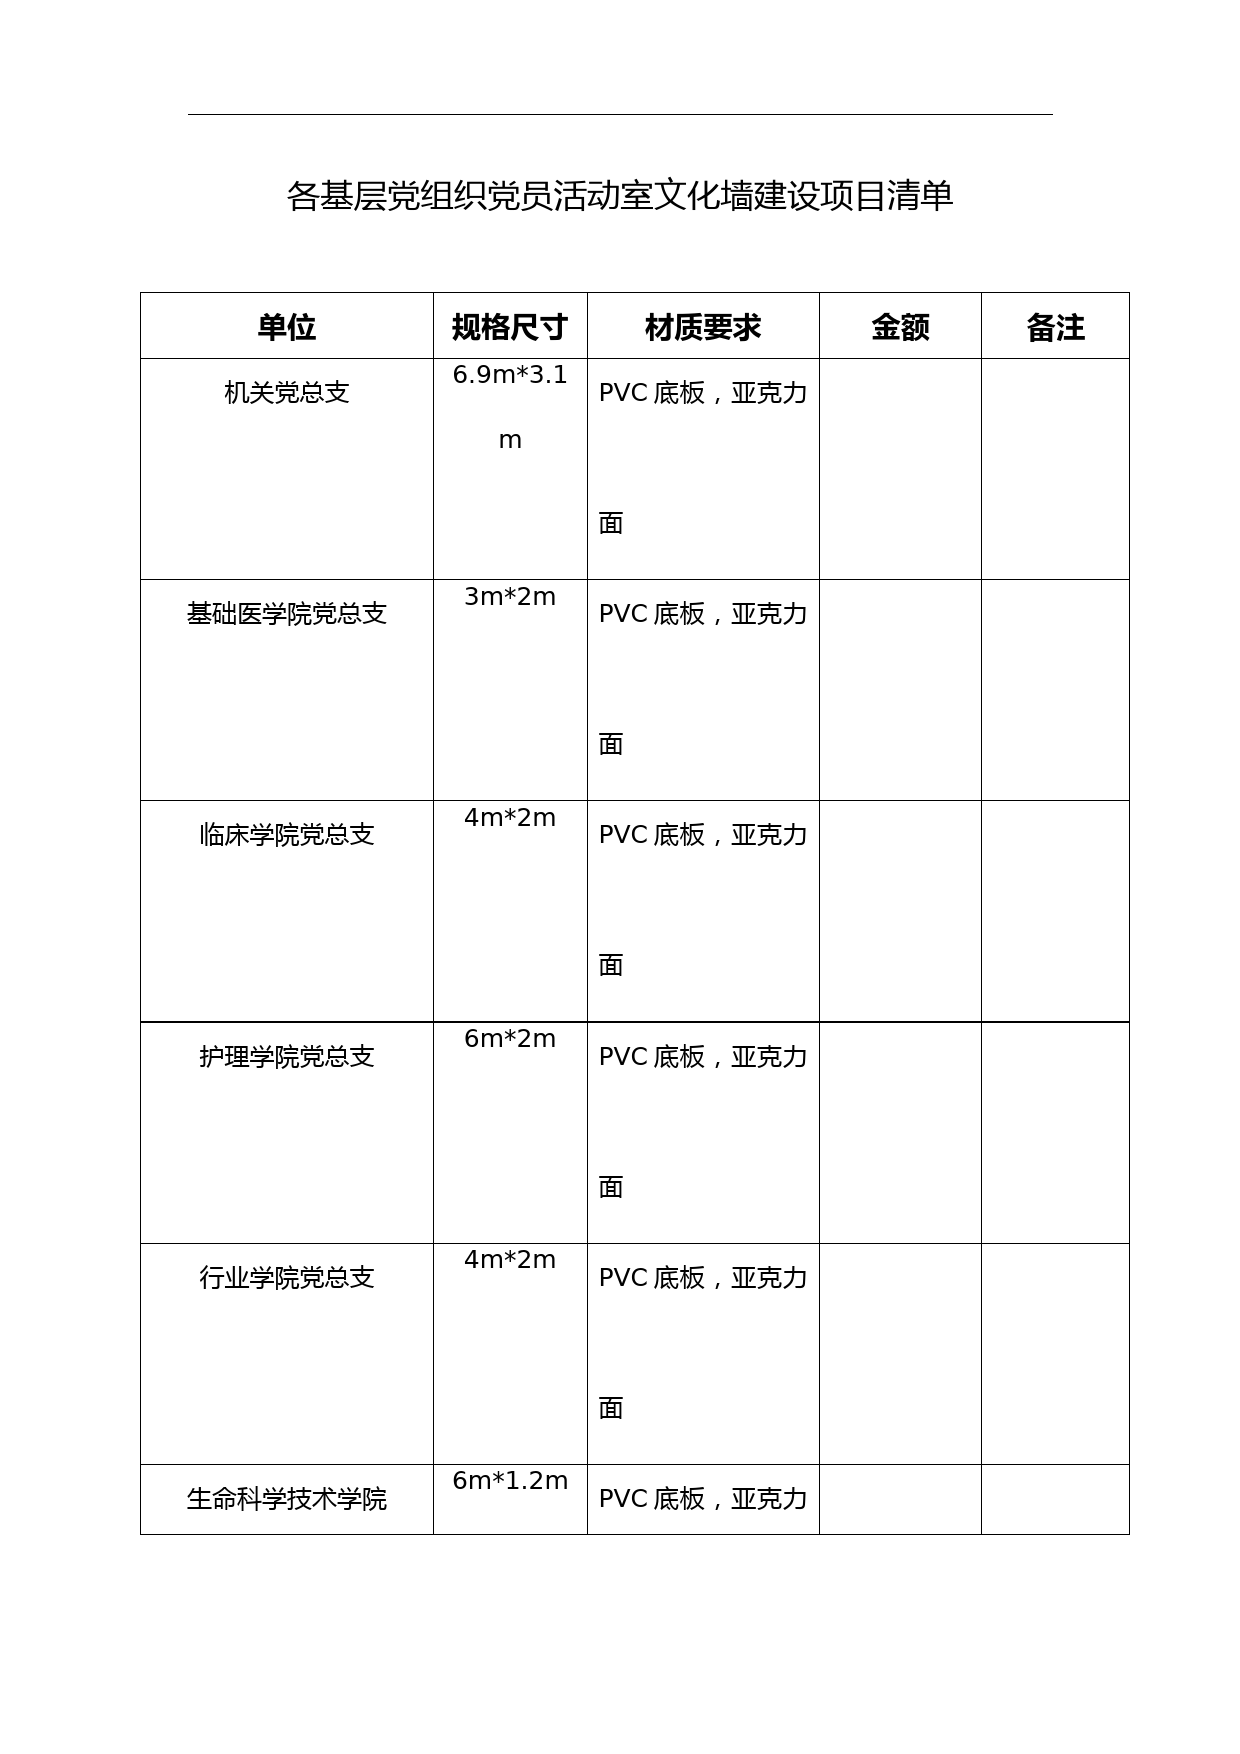 各基层党组织党员活动室文化墙建设项目清单【模板】